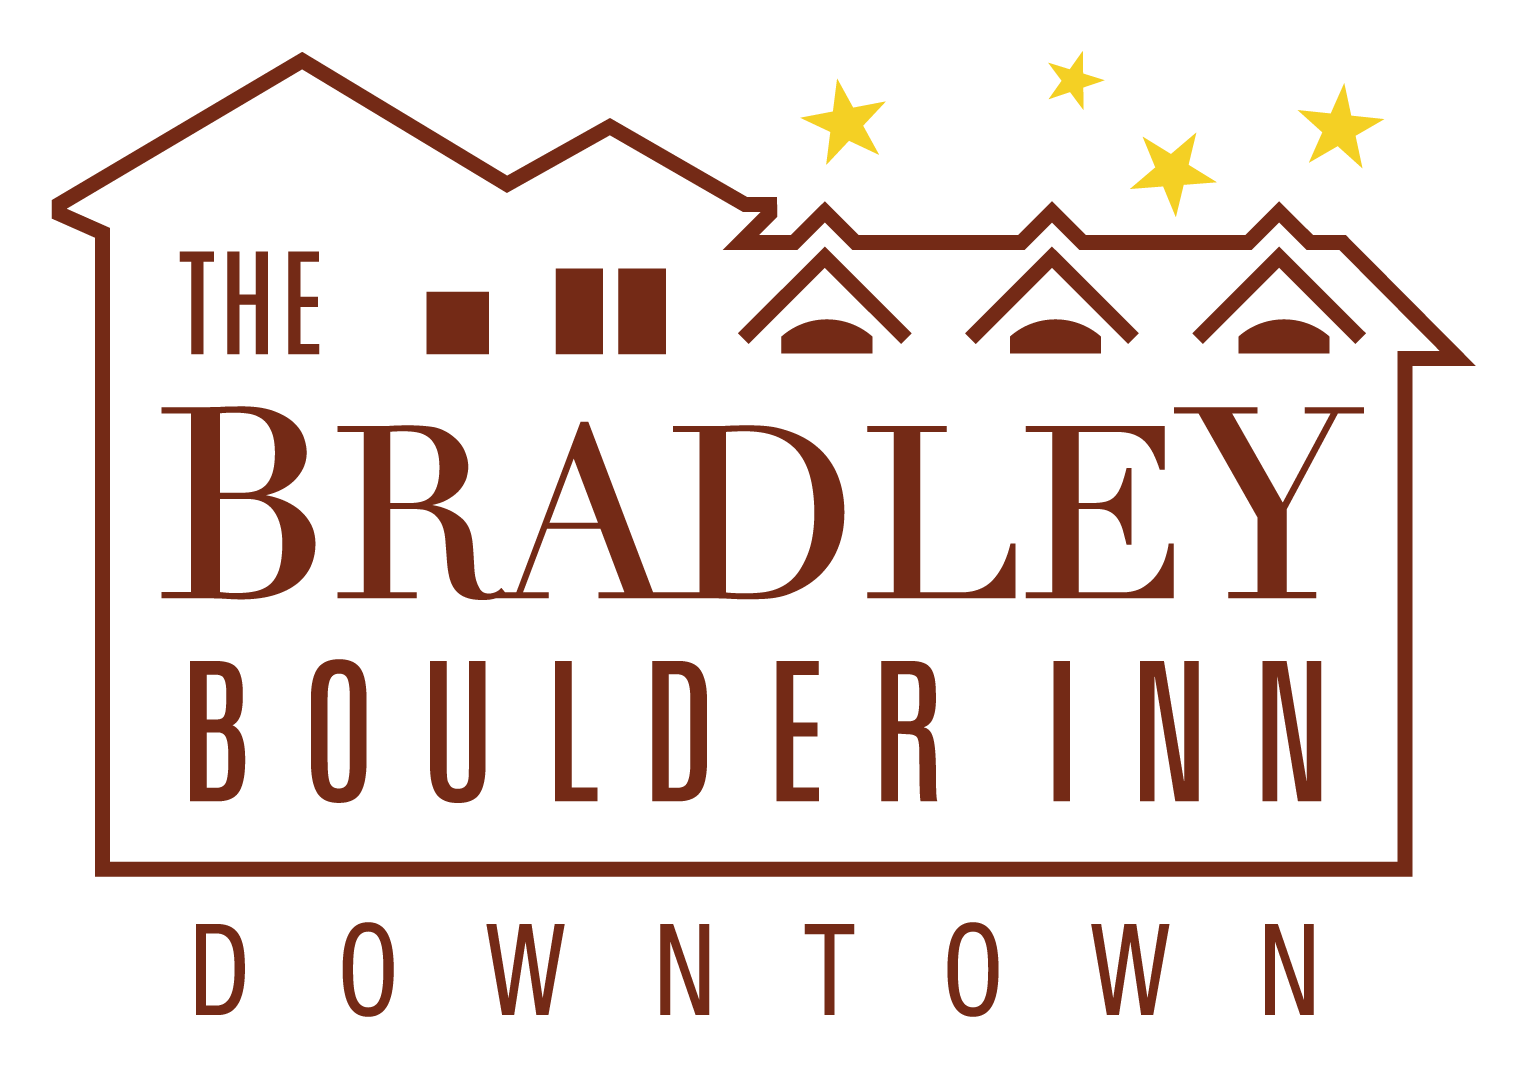 Bradley Inn